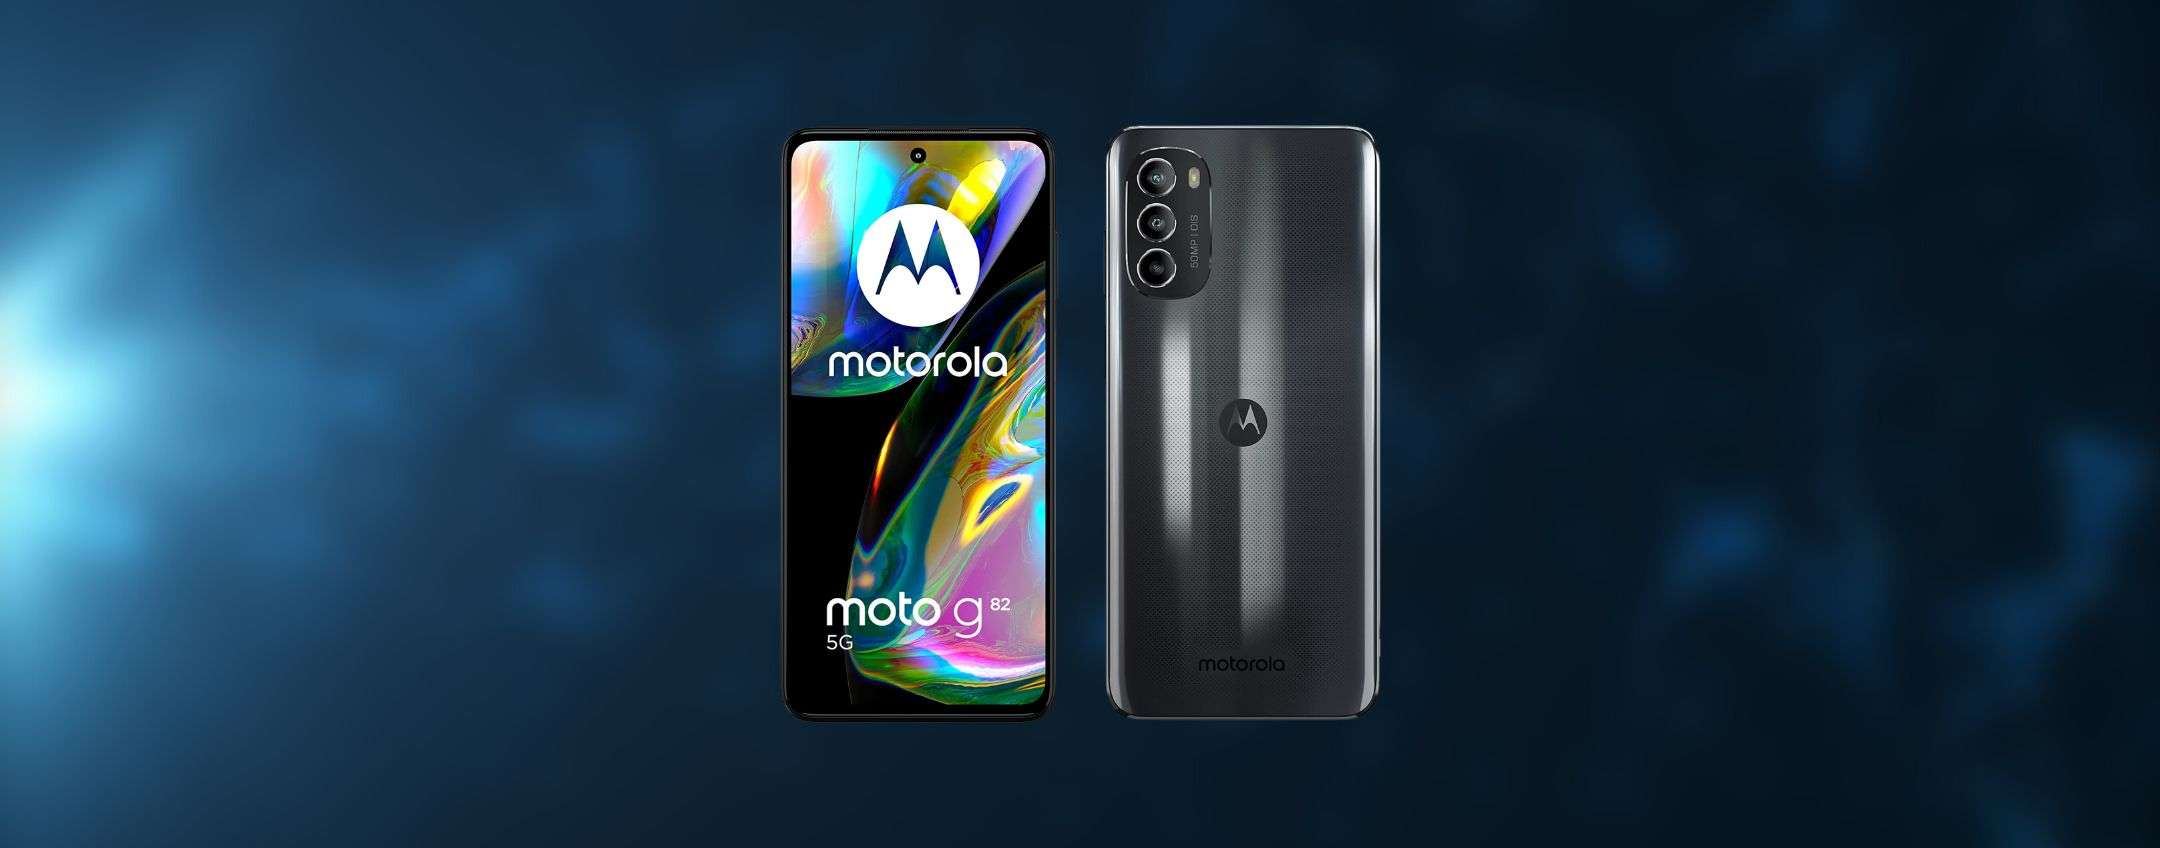 Motorola Moto g82 offerta Amazon